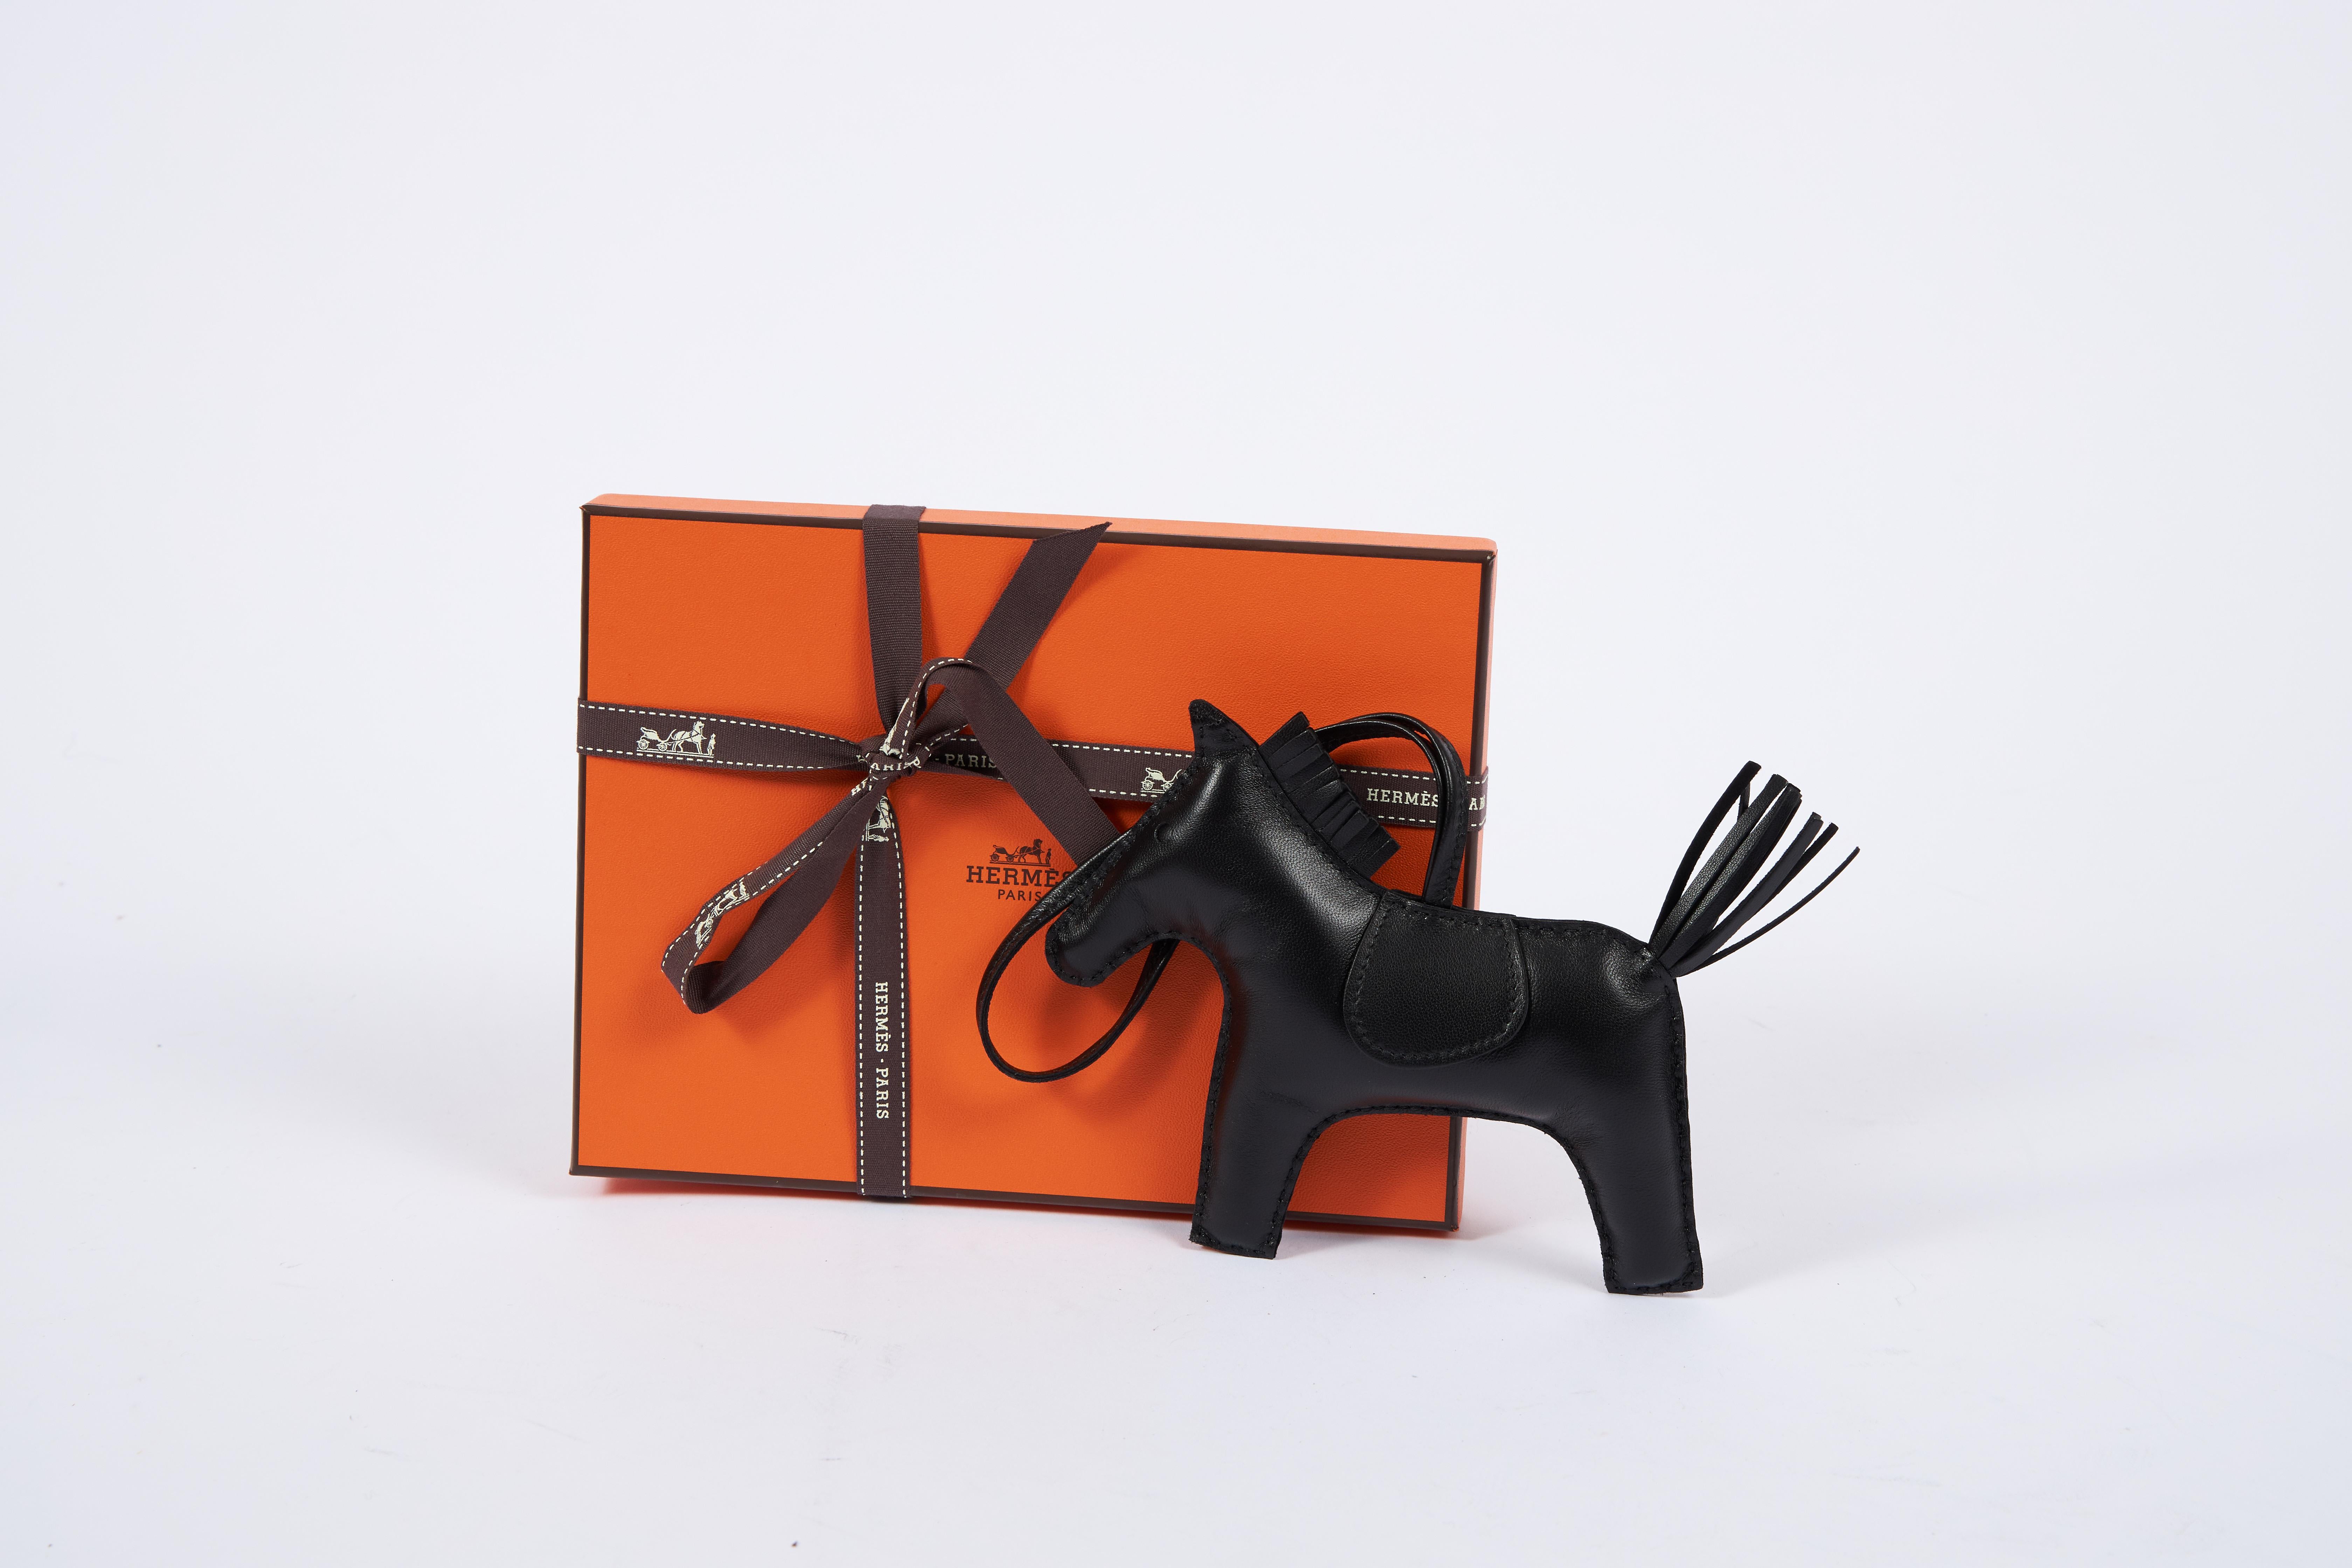 Hermes seltene und sammelbare ganz neu in Box große grigri roder alle schwarzen Swift Leder Charme. Kommt mit Originalverpackung, Schleife und Einkaufstasche.
